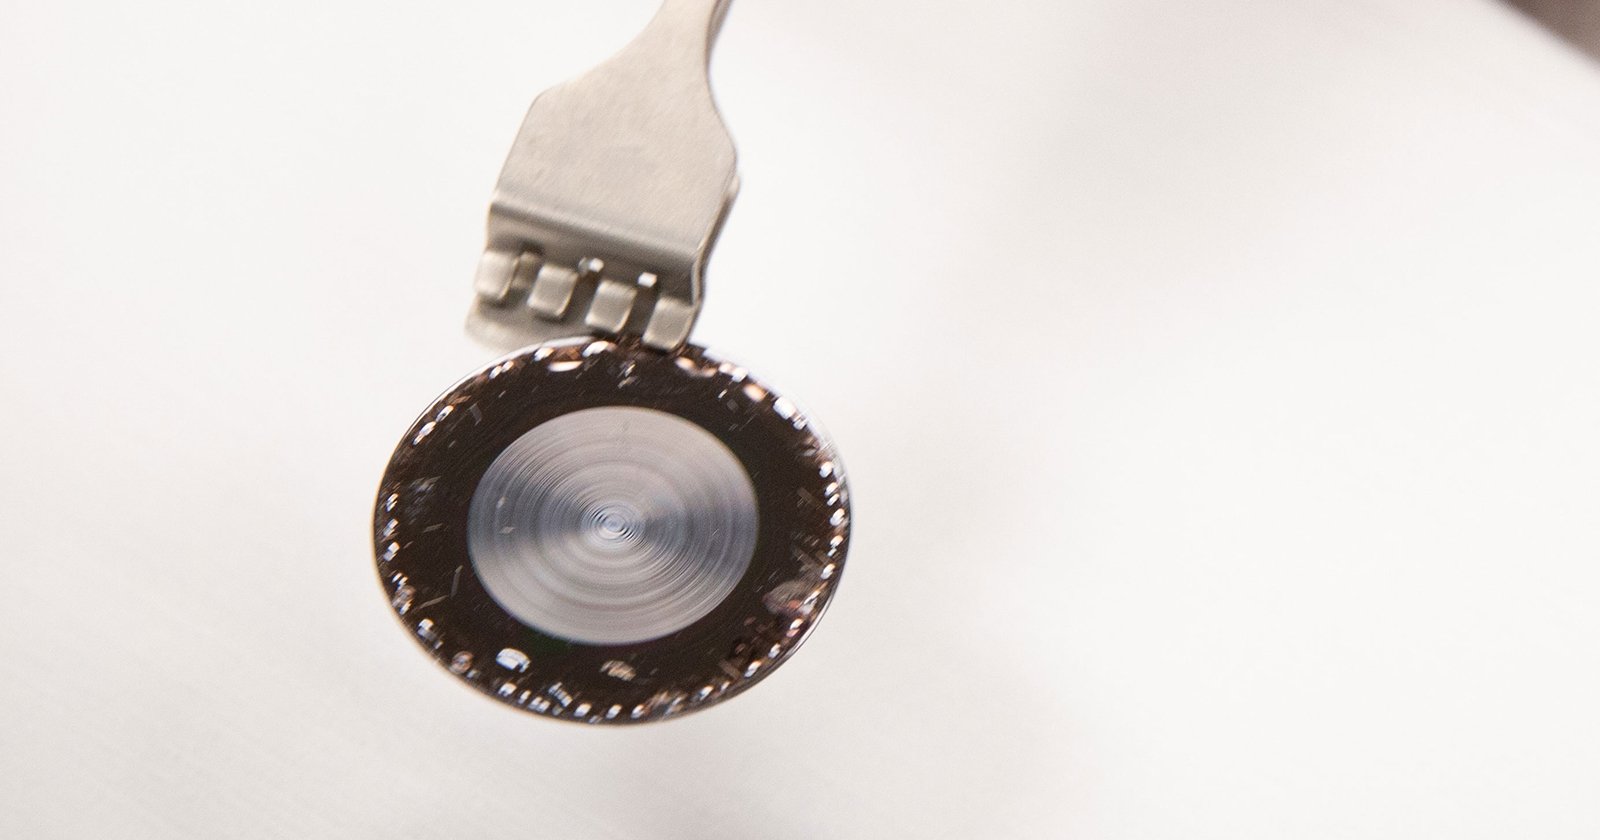 Researchers Developed a Lens thats 1000x Thinner than Regular Optics